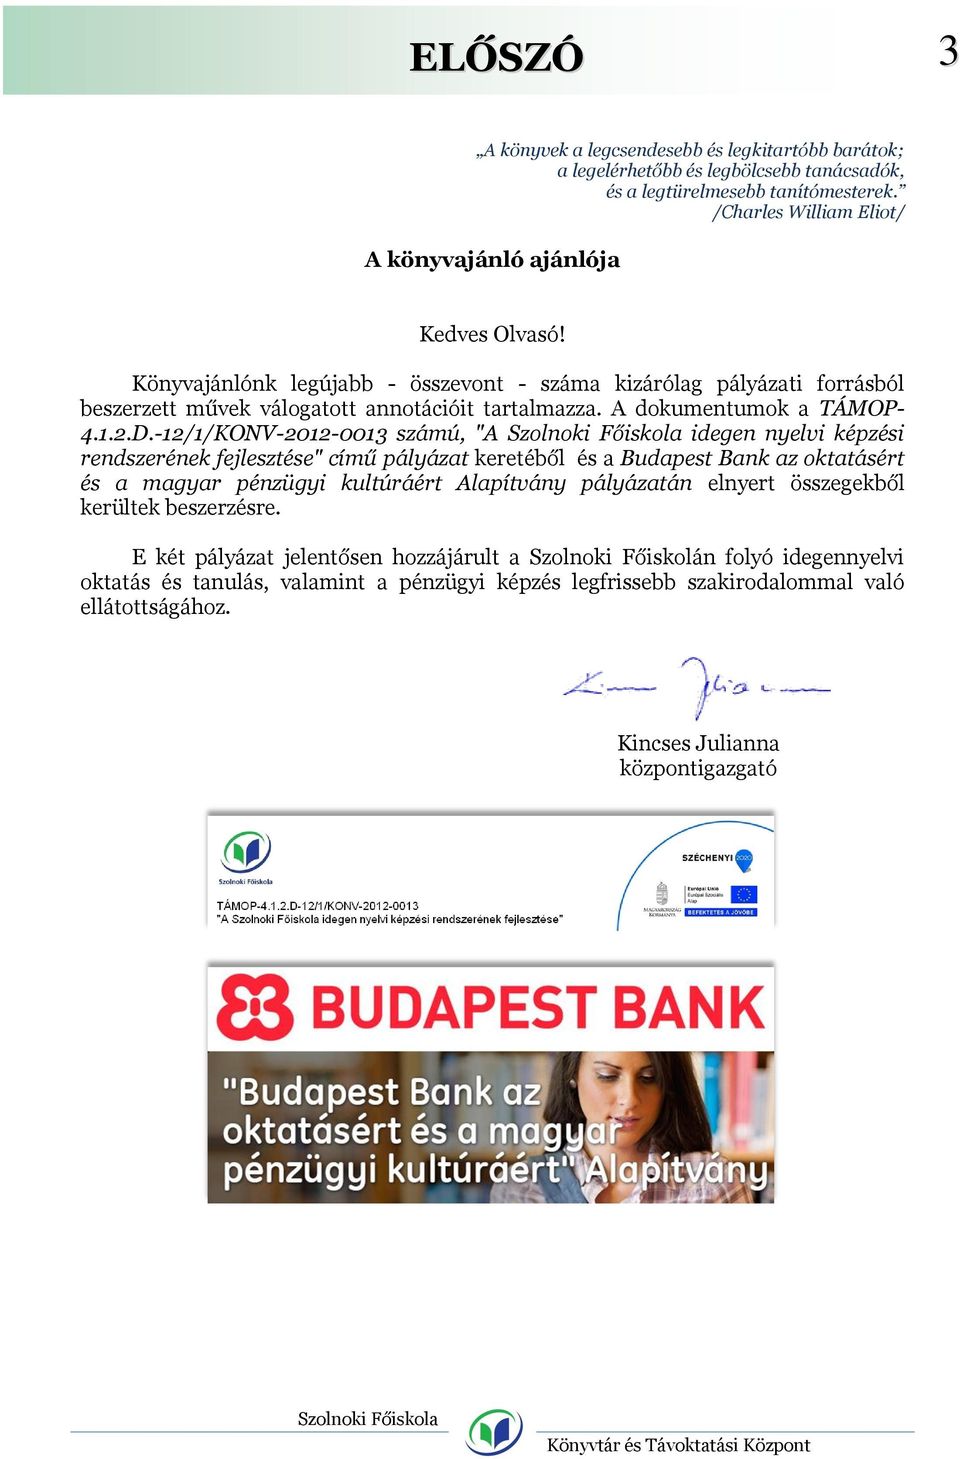 -12/1/KONV-2012-0013 számú, "A idegen nyelvi képzési rendszerének fejlesztése" című pályázat keretéből és a Budapest Bank az oktatásért és a magyar pénzügyi kultúráért Alapítvány pályázatán elnyert